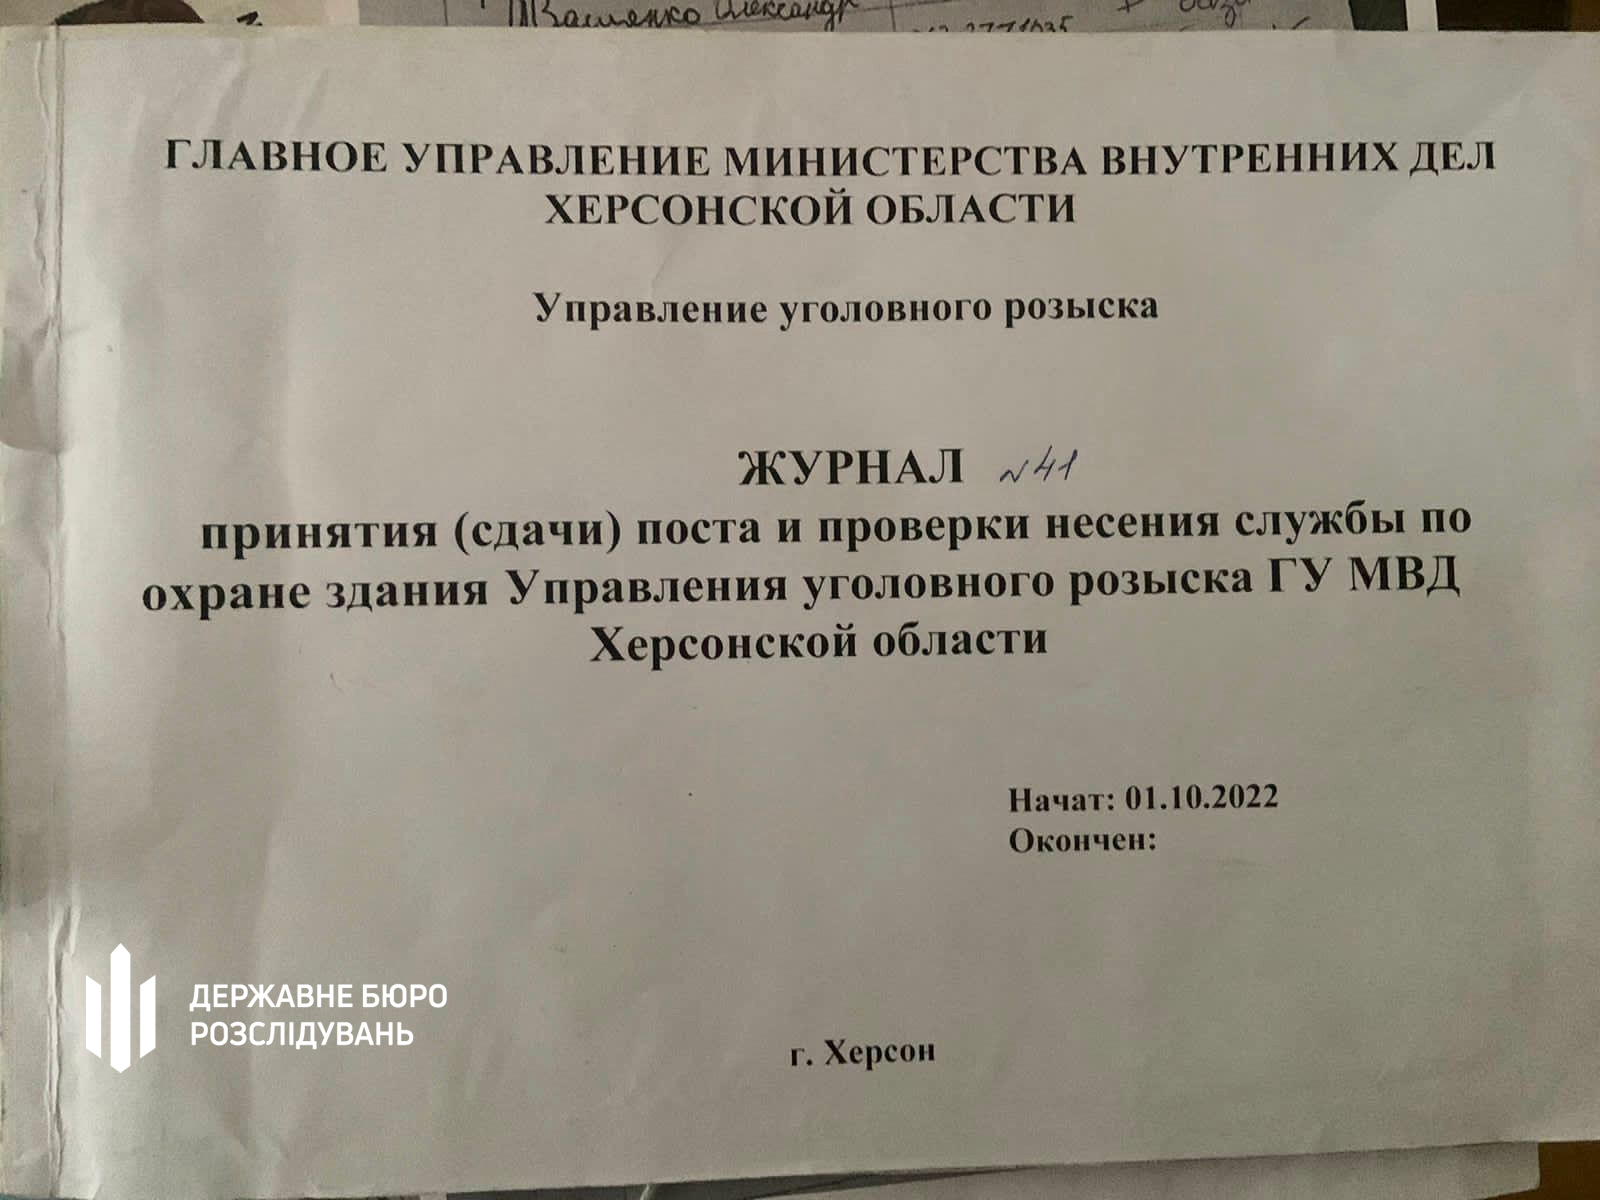 Співробітники Державного бюро розслідувань виявили у звільненому Херсоні список колишніх українських правоохоронців, які несли службу у "поліції рашистів"